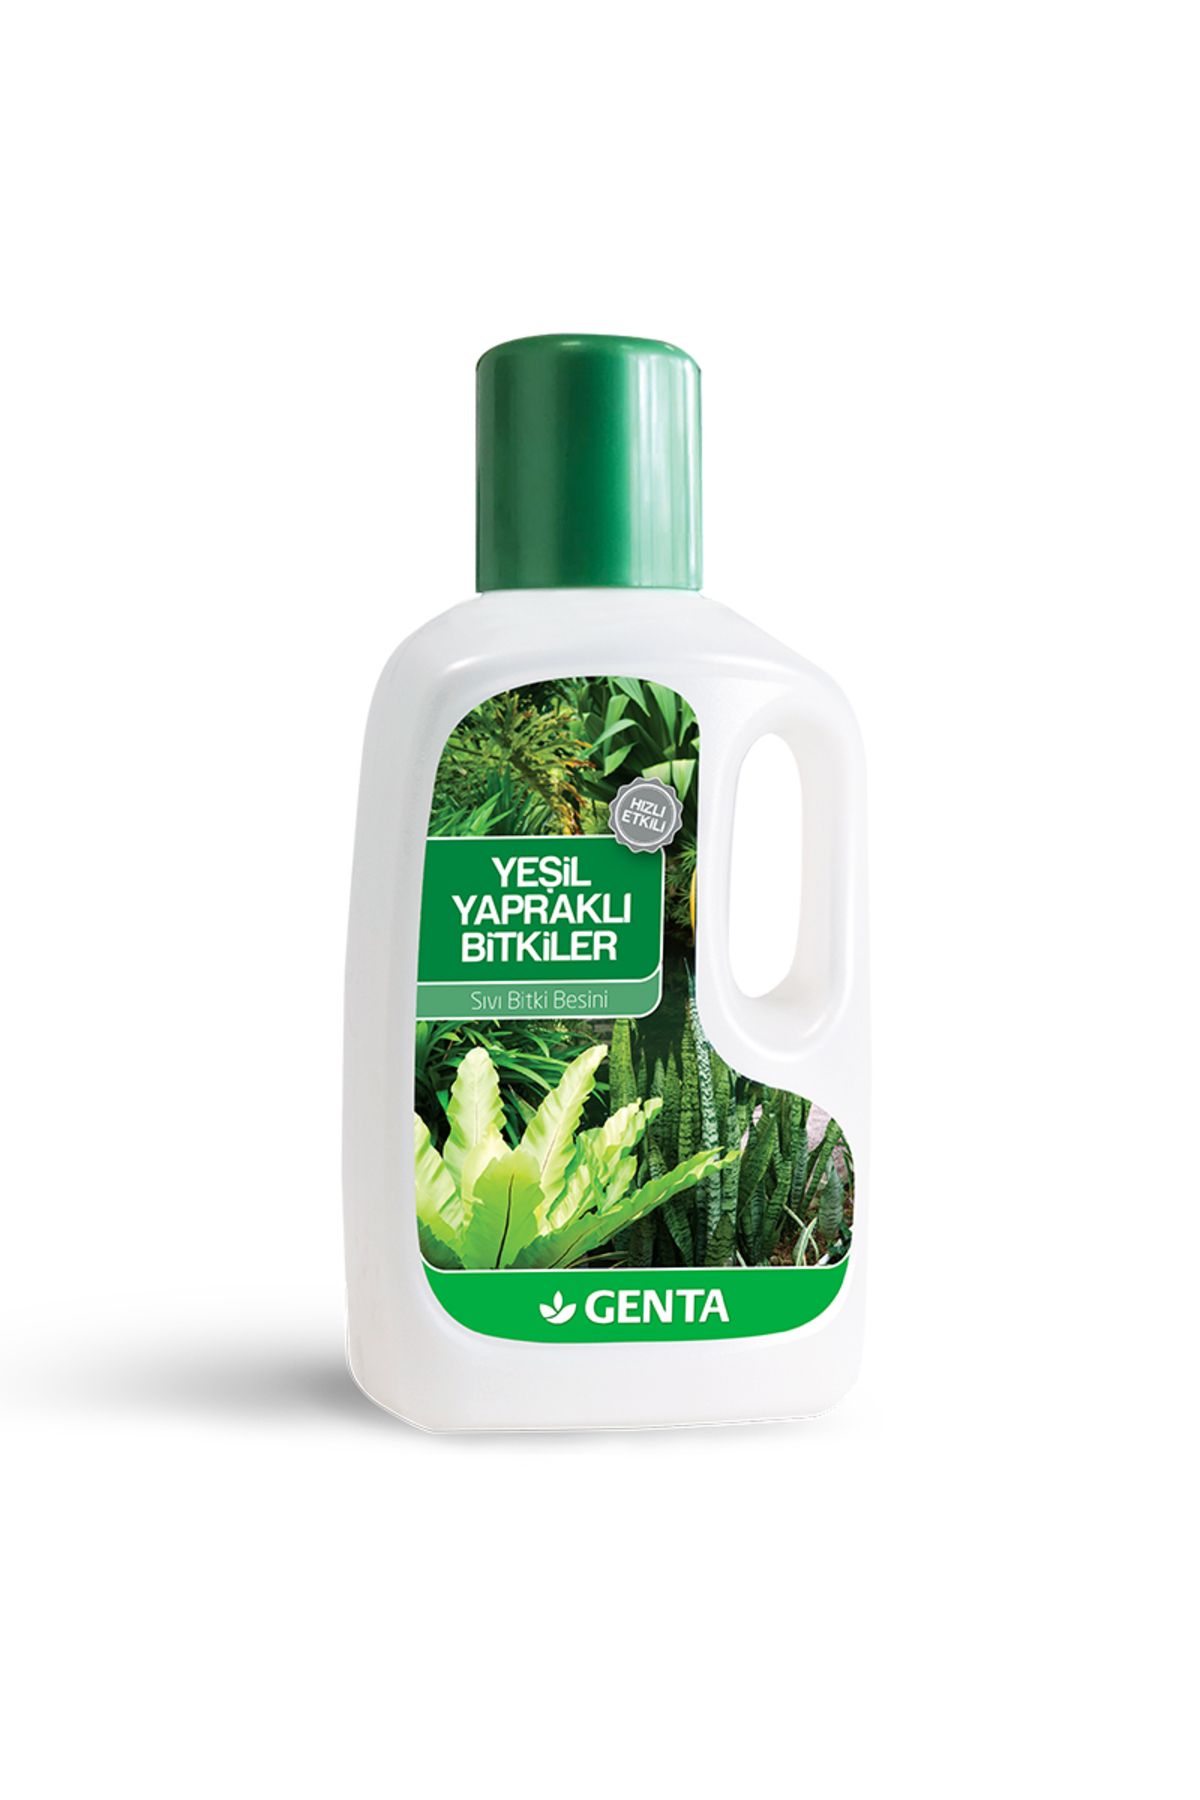 Genta Yeşil Yapraklı Bitkiler Için Sıvı Bitki Besini 500cc- Sıvı Gübre